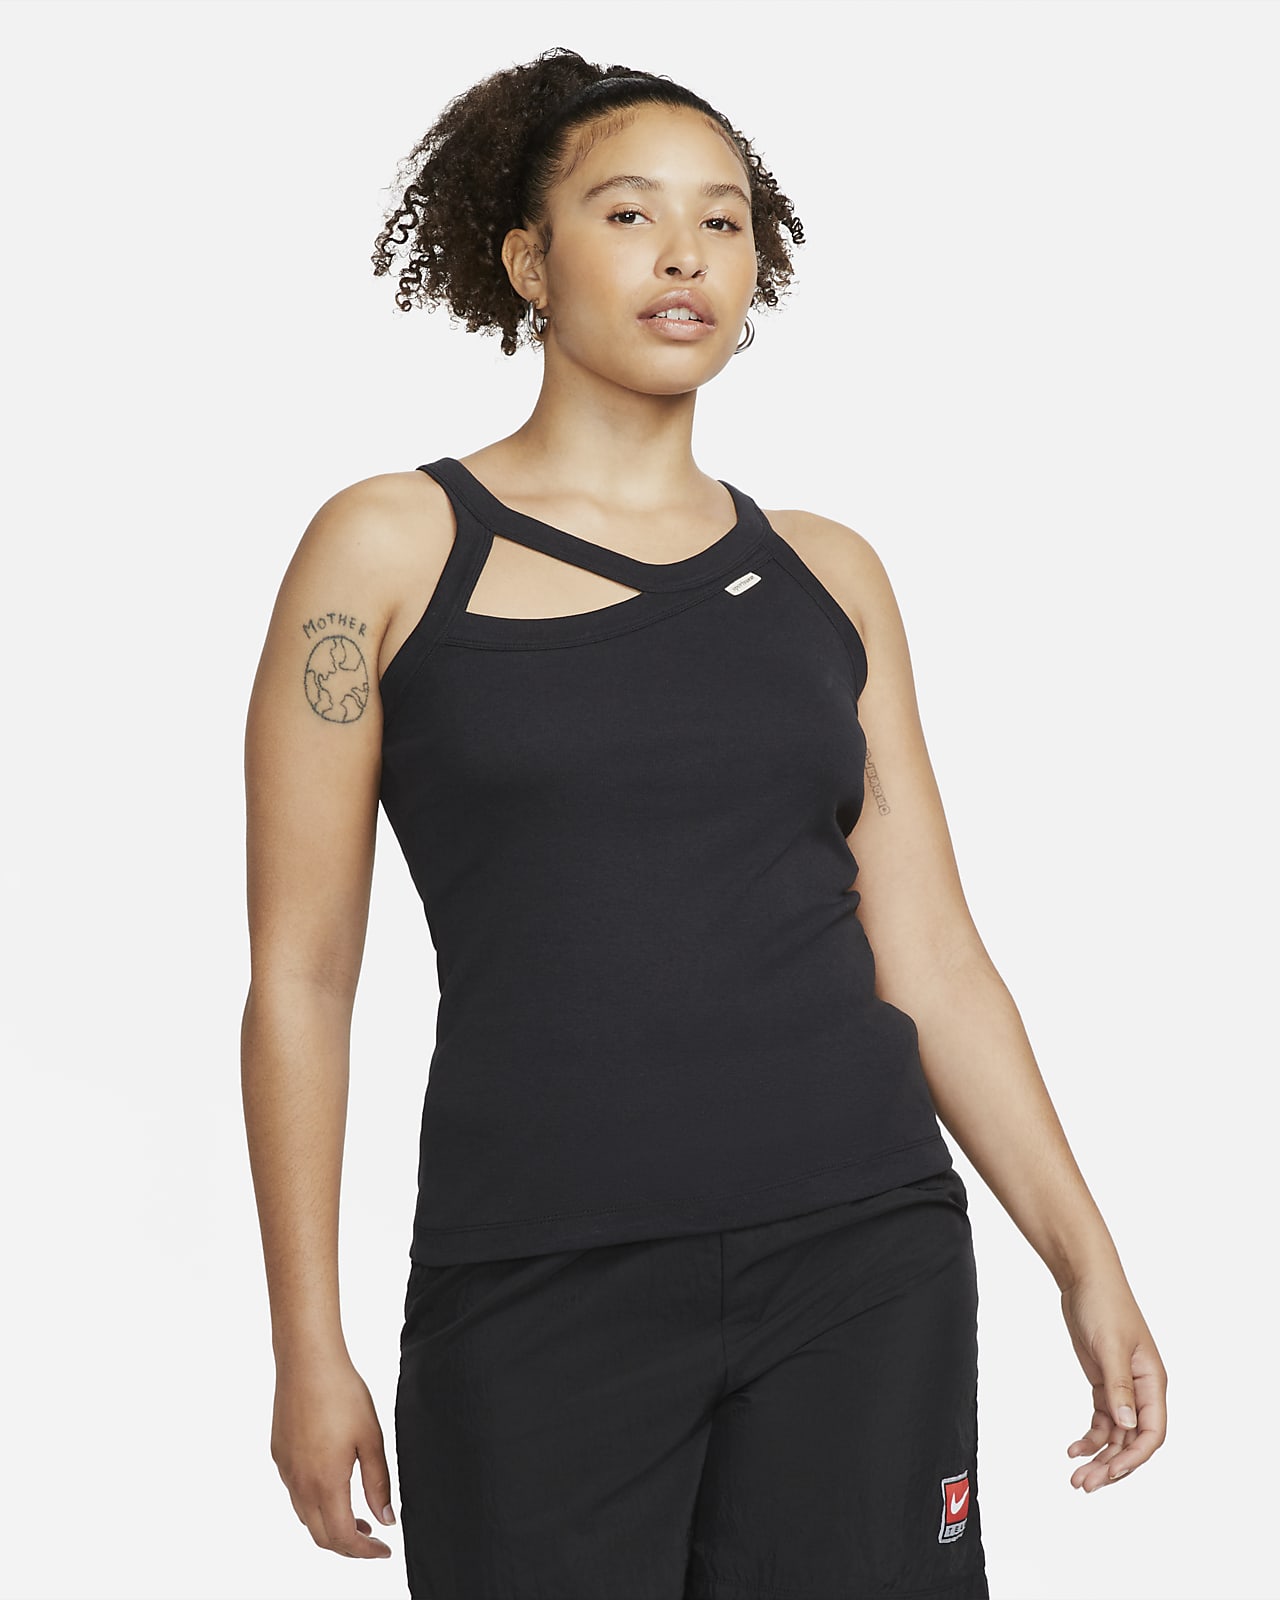 Nike, Sportswear Women's Muscle Tank Top, Tank Tops